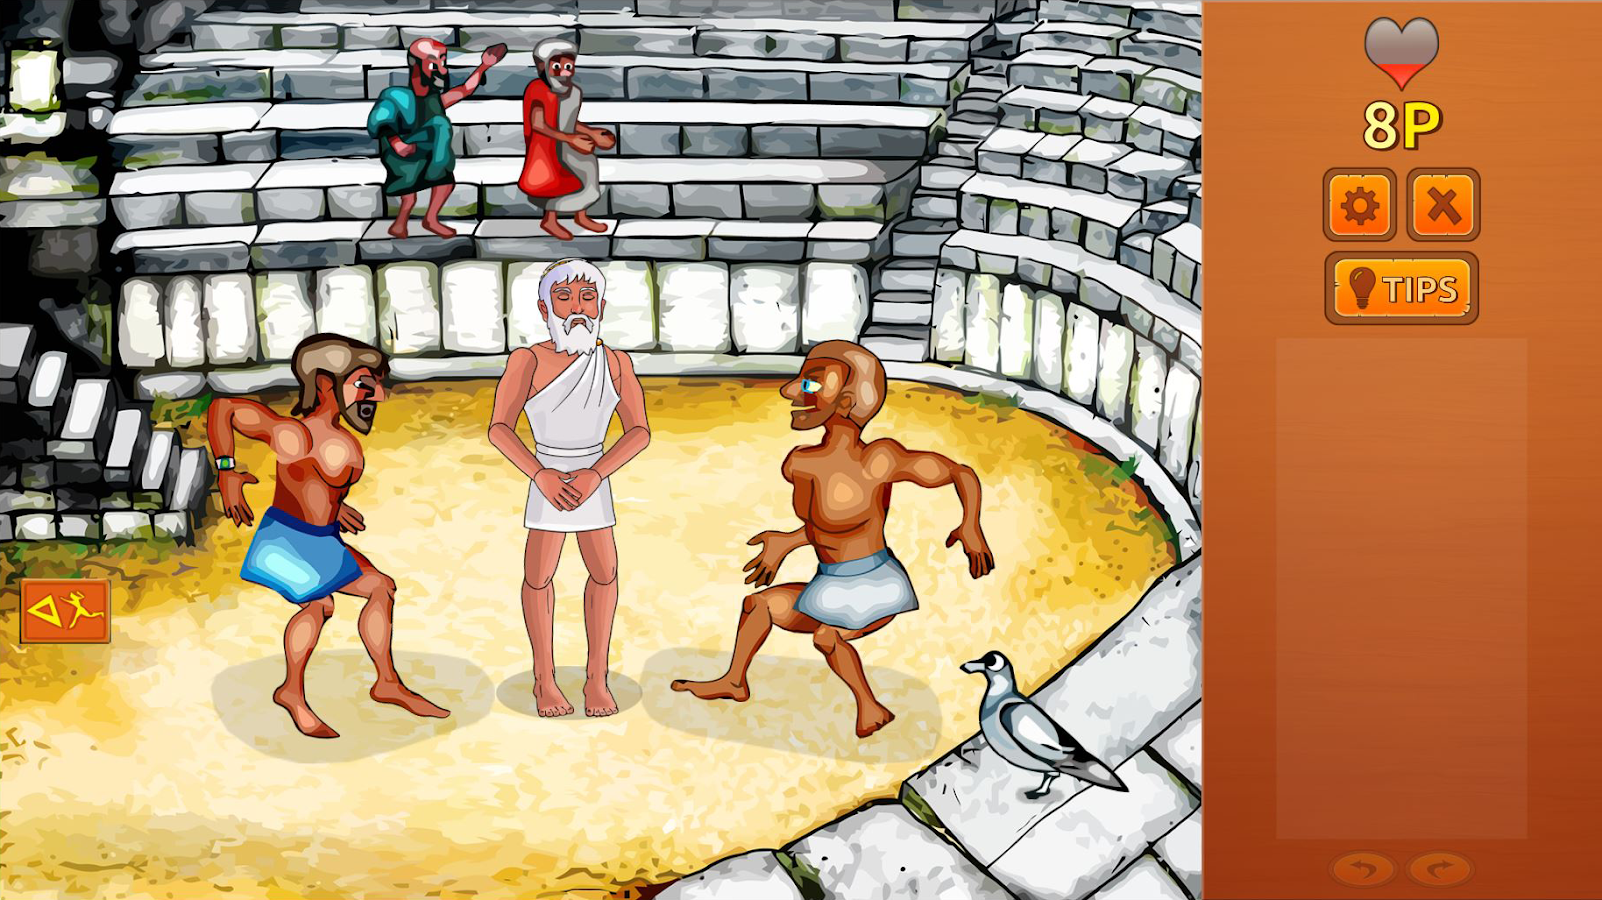   Zeus Quest Remastered- screenshot 